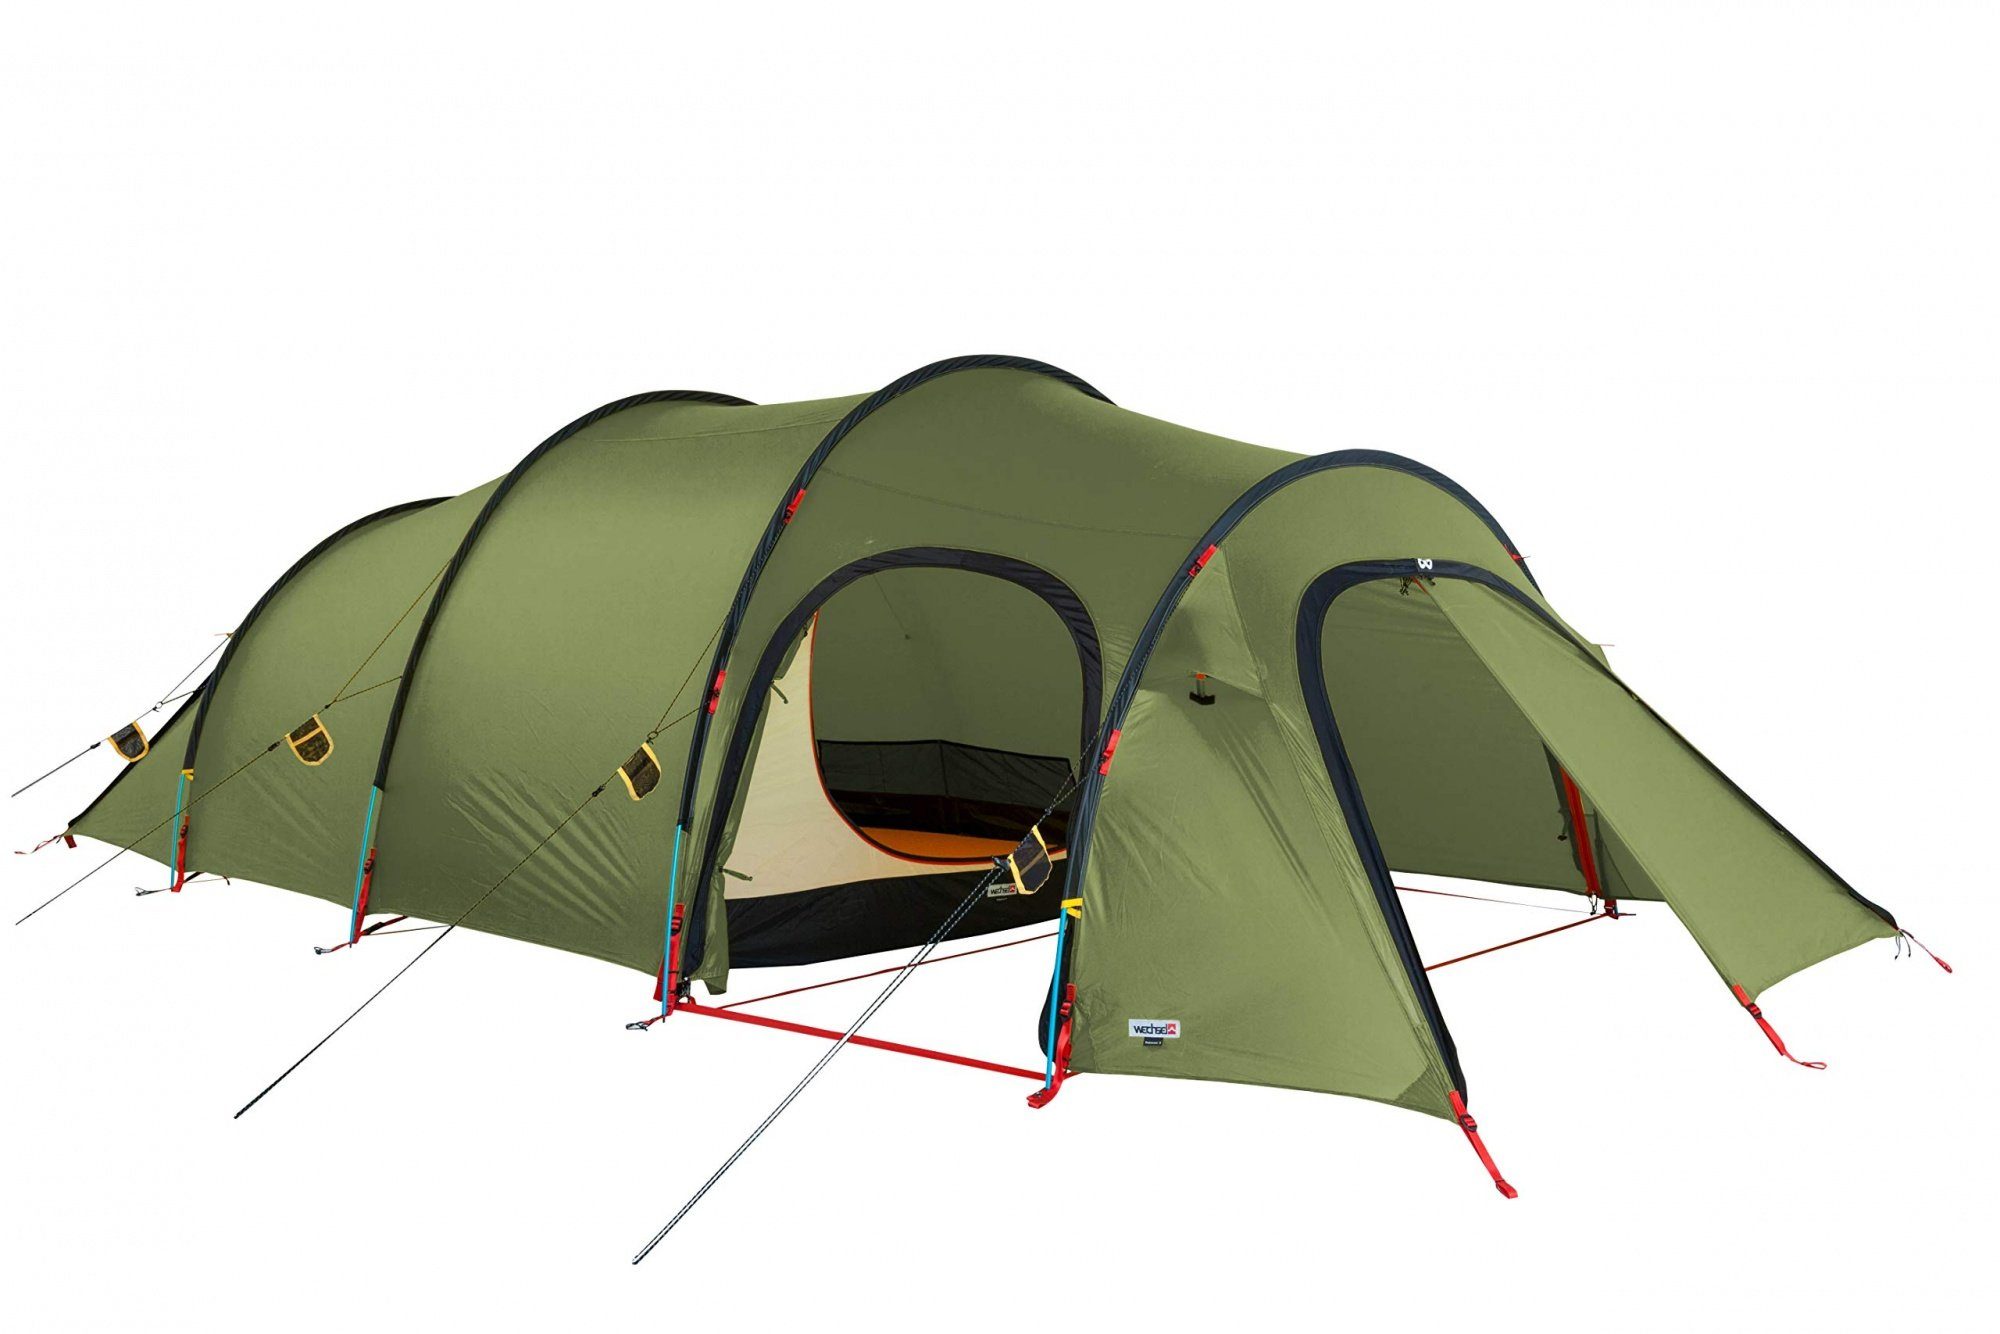 Wechsel Tents Biwakzelt Endeavour 4 Personen Expeditionszelt - 4 Jahreszeiten - Grün, Personen: 4 | Biwakzelte